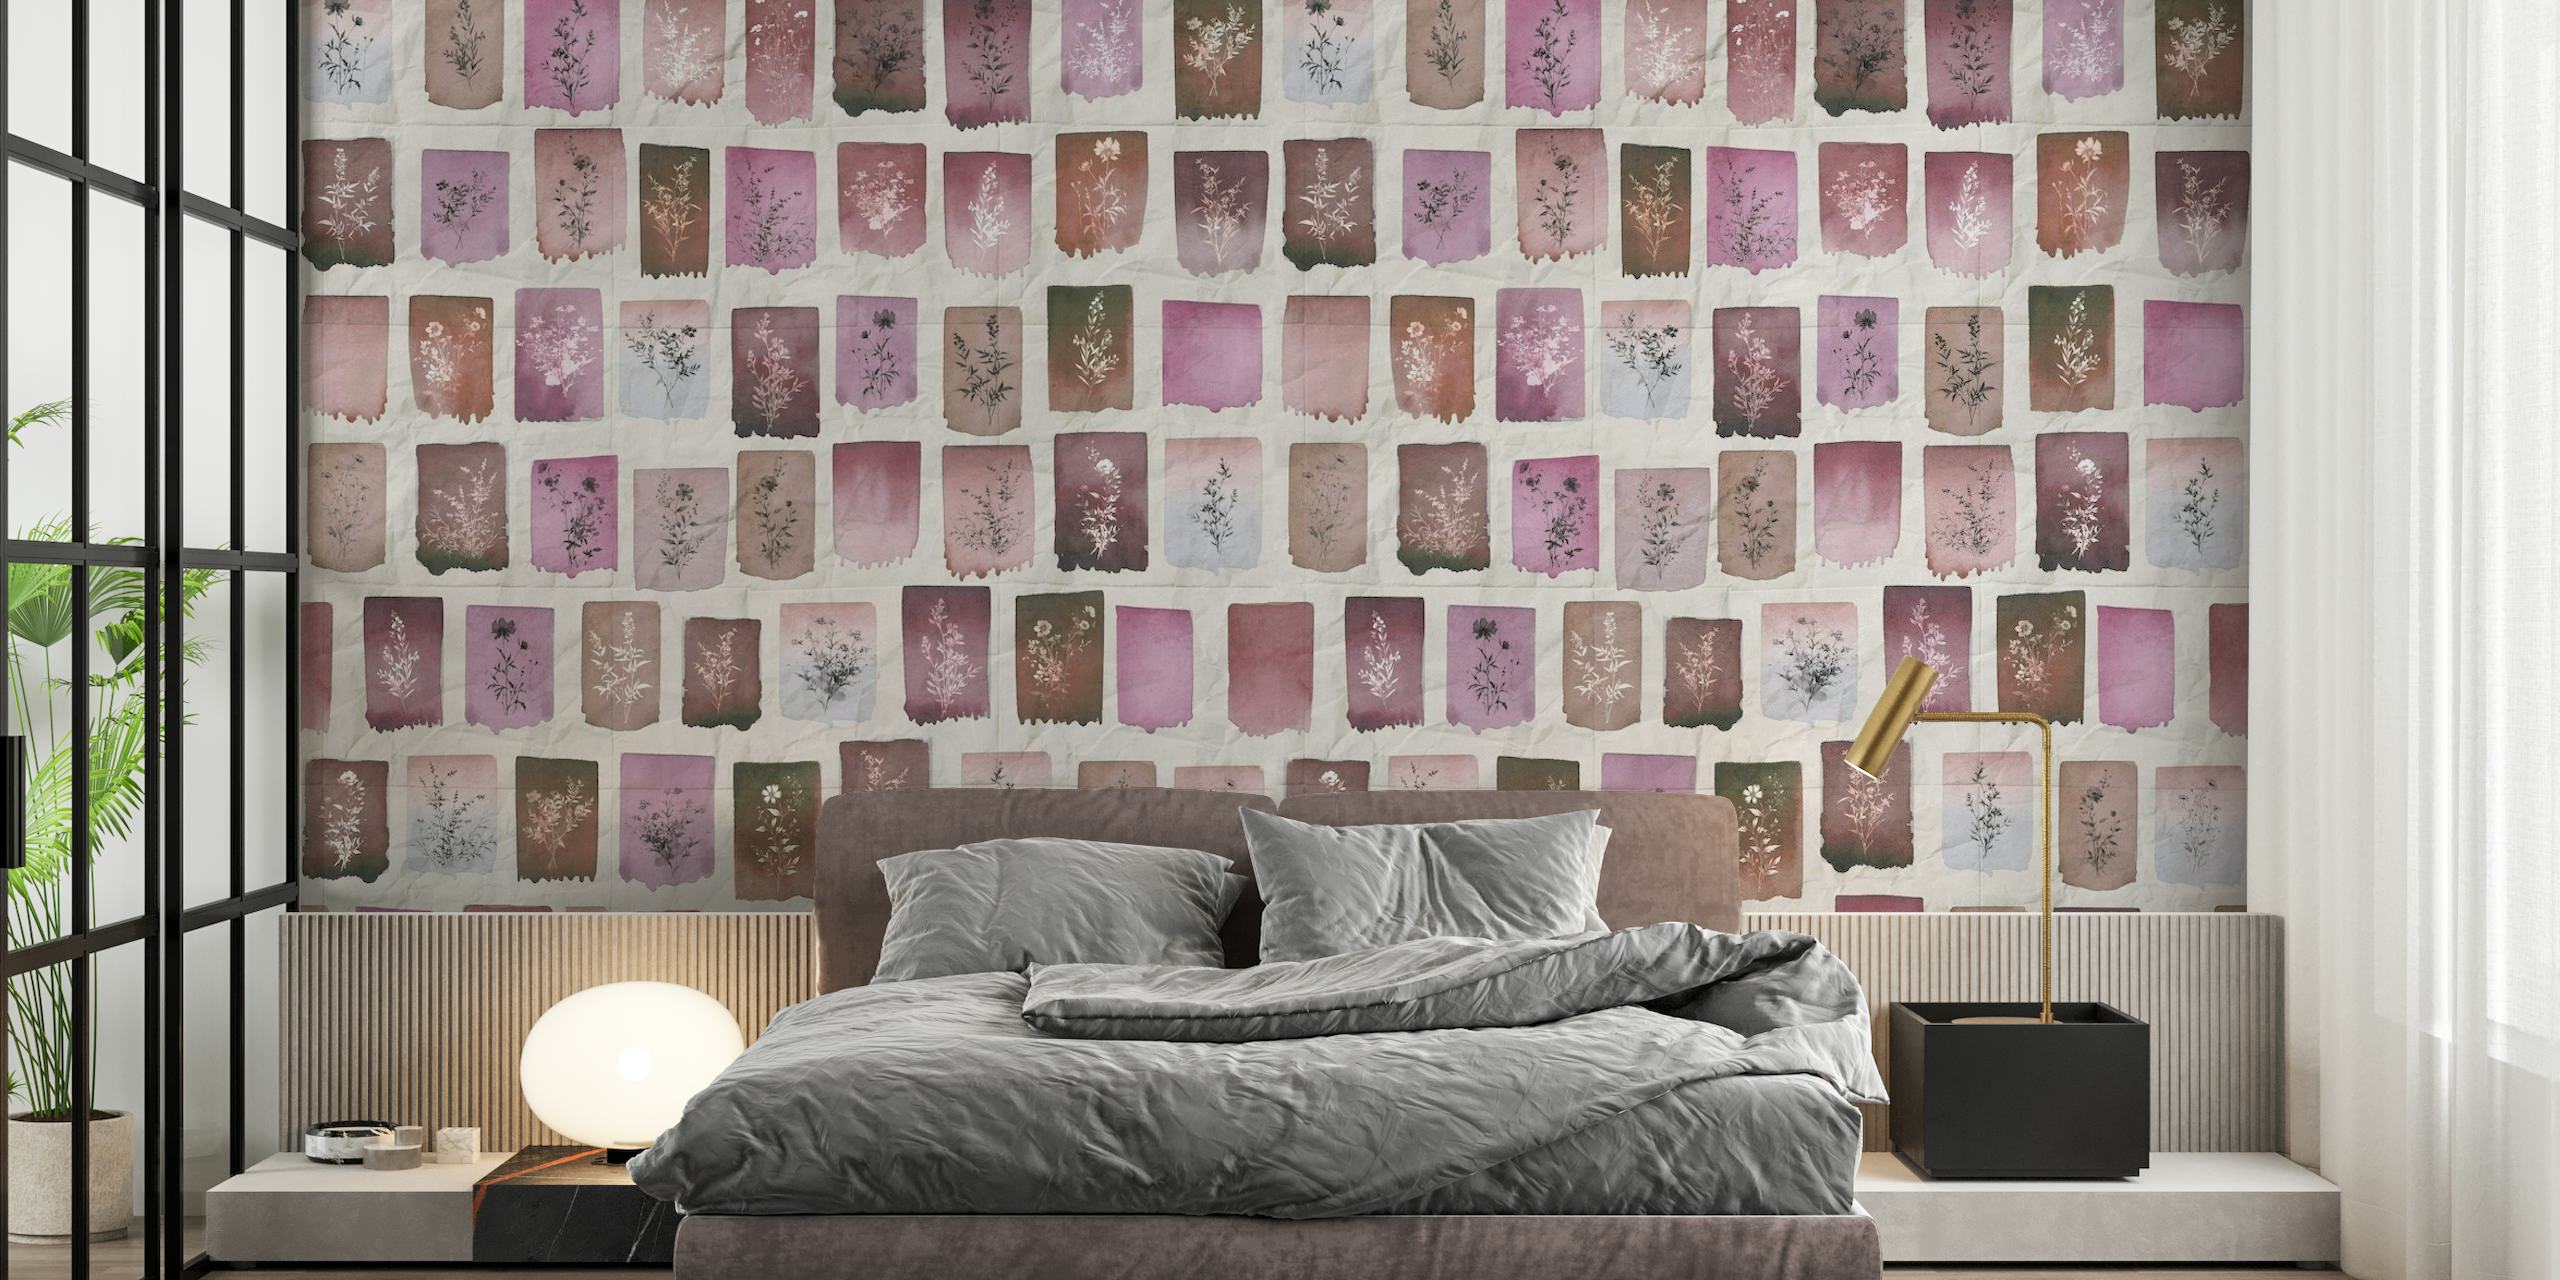 Ilustrações de herbário vintage de rosas dispostas em um padrão de grade sobre um fundo de papel envelhecido, para um mural de parede.